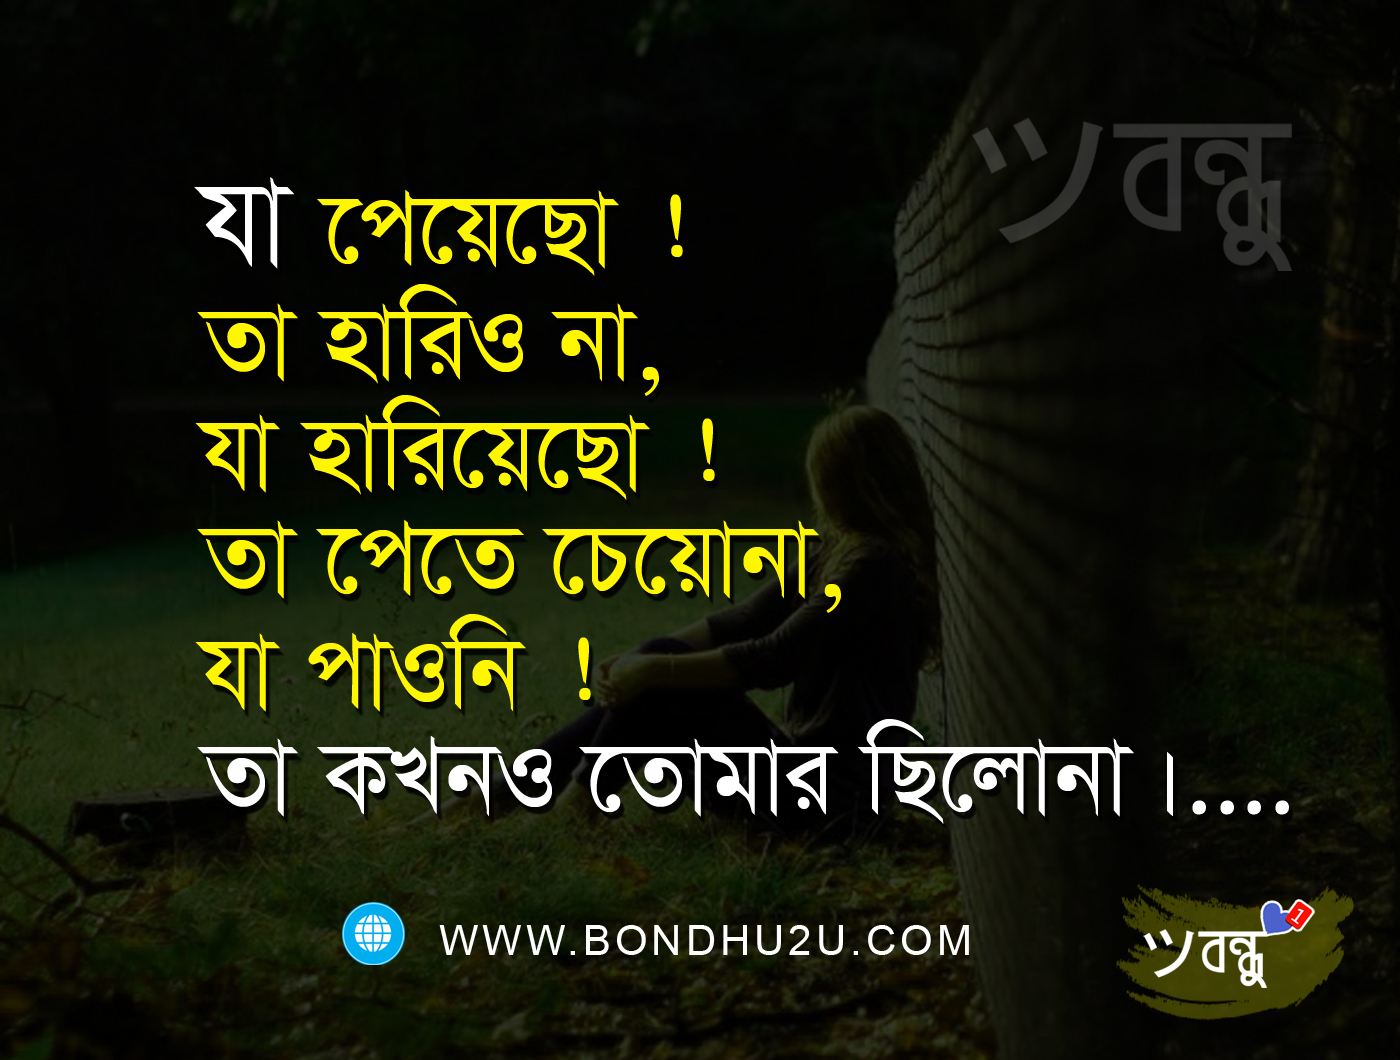 download di sfondi bangla kobita,testo,font,buio,didascalia della foto,fotografia